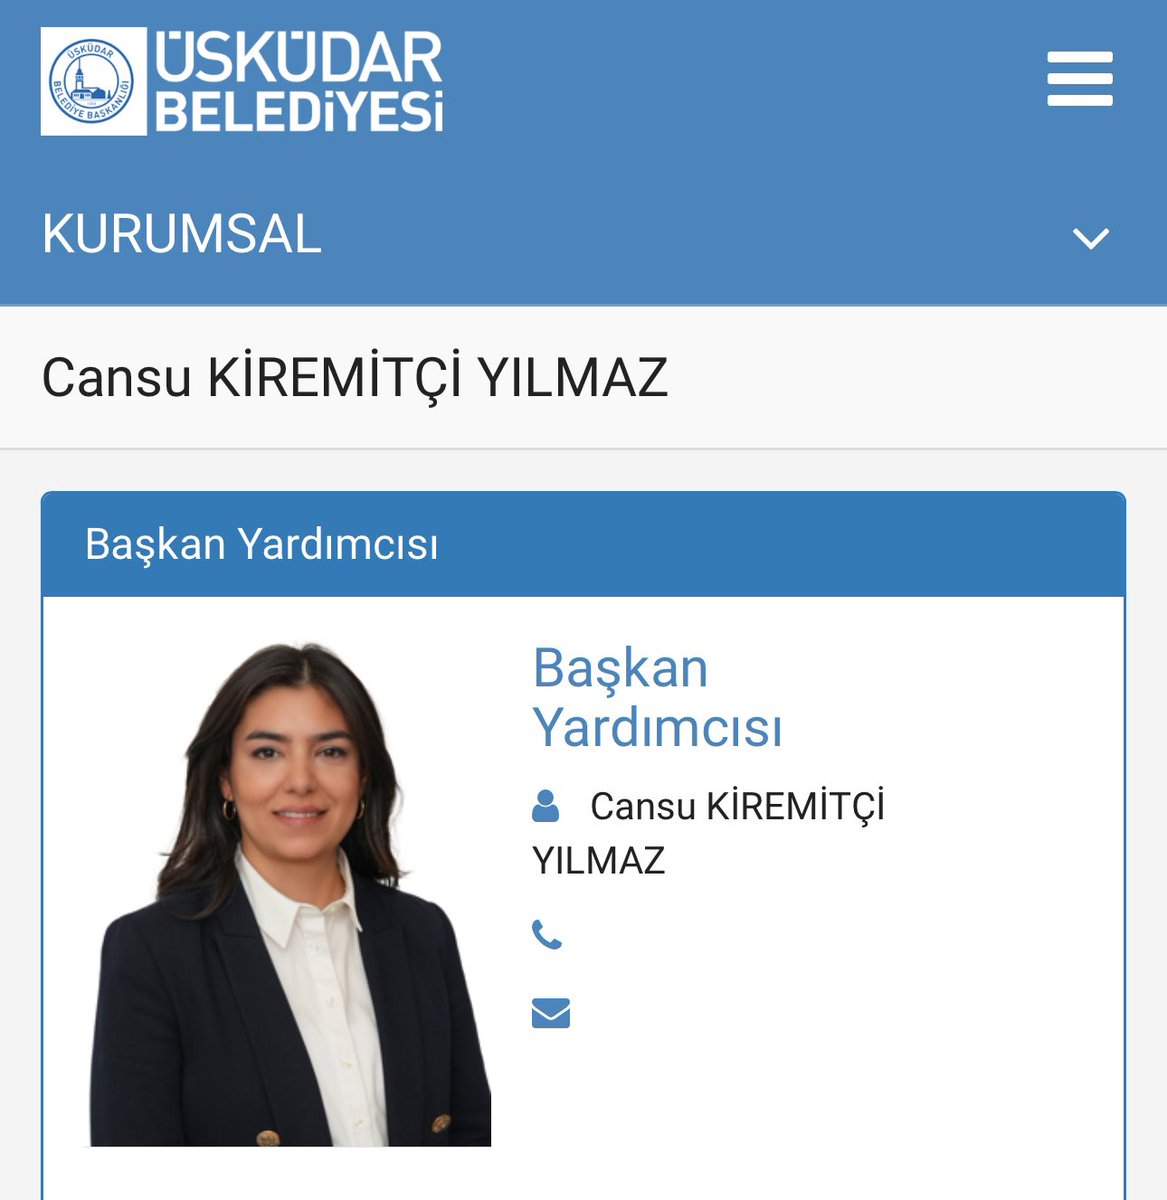 'İstanbul Büyükşehir Belediyesi Dijital İletişim Koordinatörü Ulaş Yılmaz'ın eşi Cansu Kiremitçi Yılmaz'ın Kadıköy Belediyesi'nde Gençlik ve Spor Hizmetleri Müdürü olduğu ortaya çıkmıştı. Şimdi ise Cansu Kiremitçi Yılmaz, Sinem Dedetaş tarafından Üsküdar Belediye Başkan…